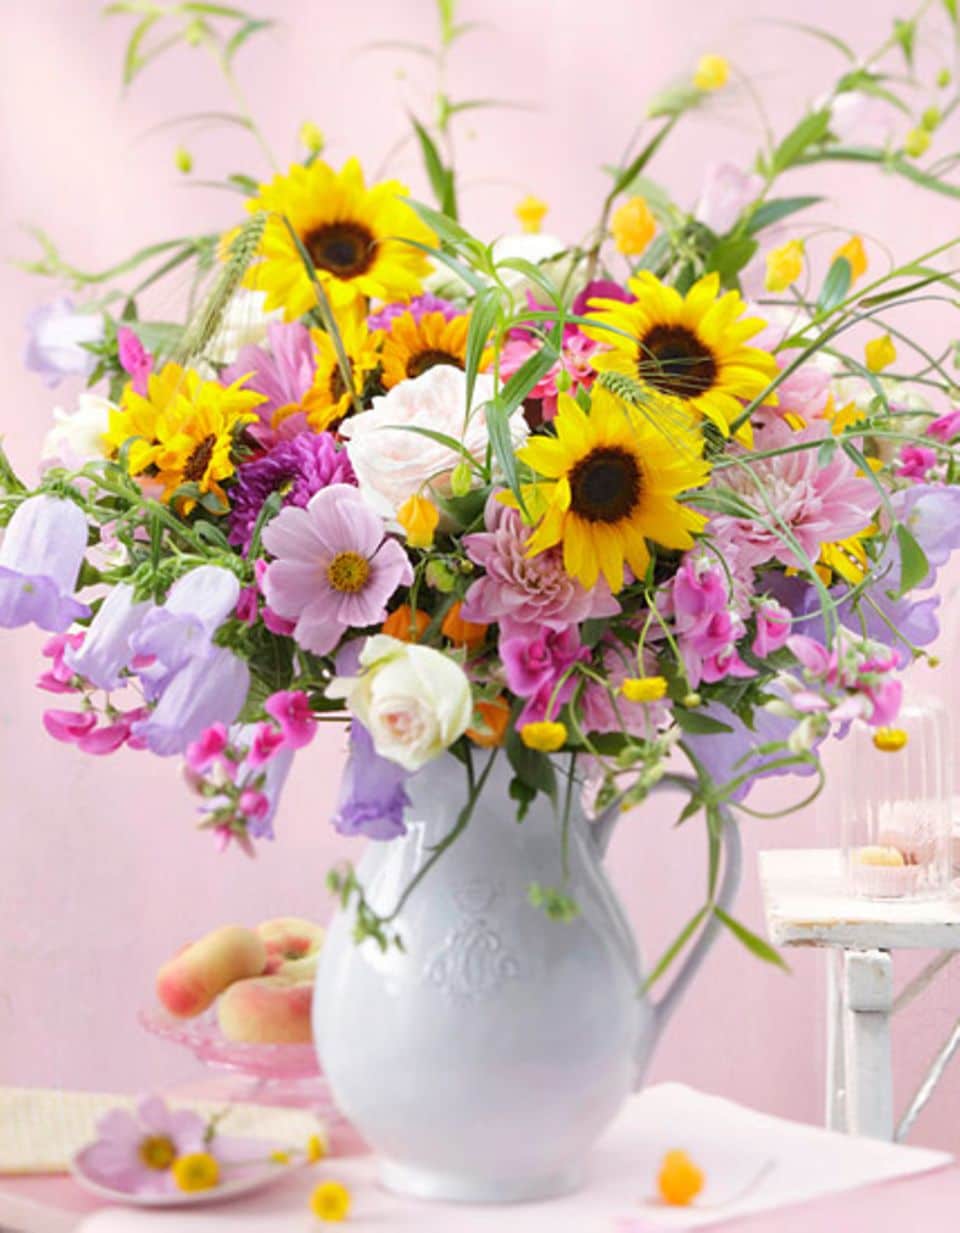 Dieser Blumenstrauß mit Sonnenblumen, Zinnien und Dahlien verbindet Schlichtheit mit Verspieltheit und lässt eine unbeschwerte Sommerathmosphäre aufkommen.